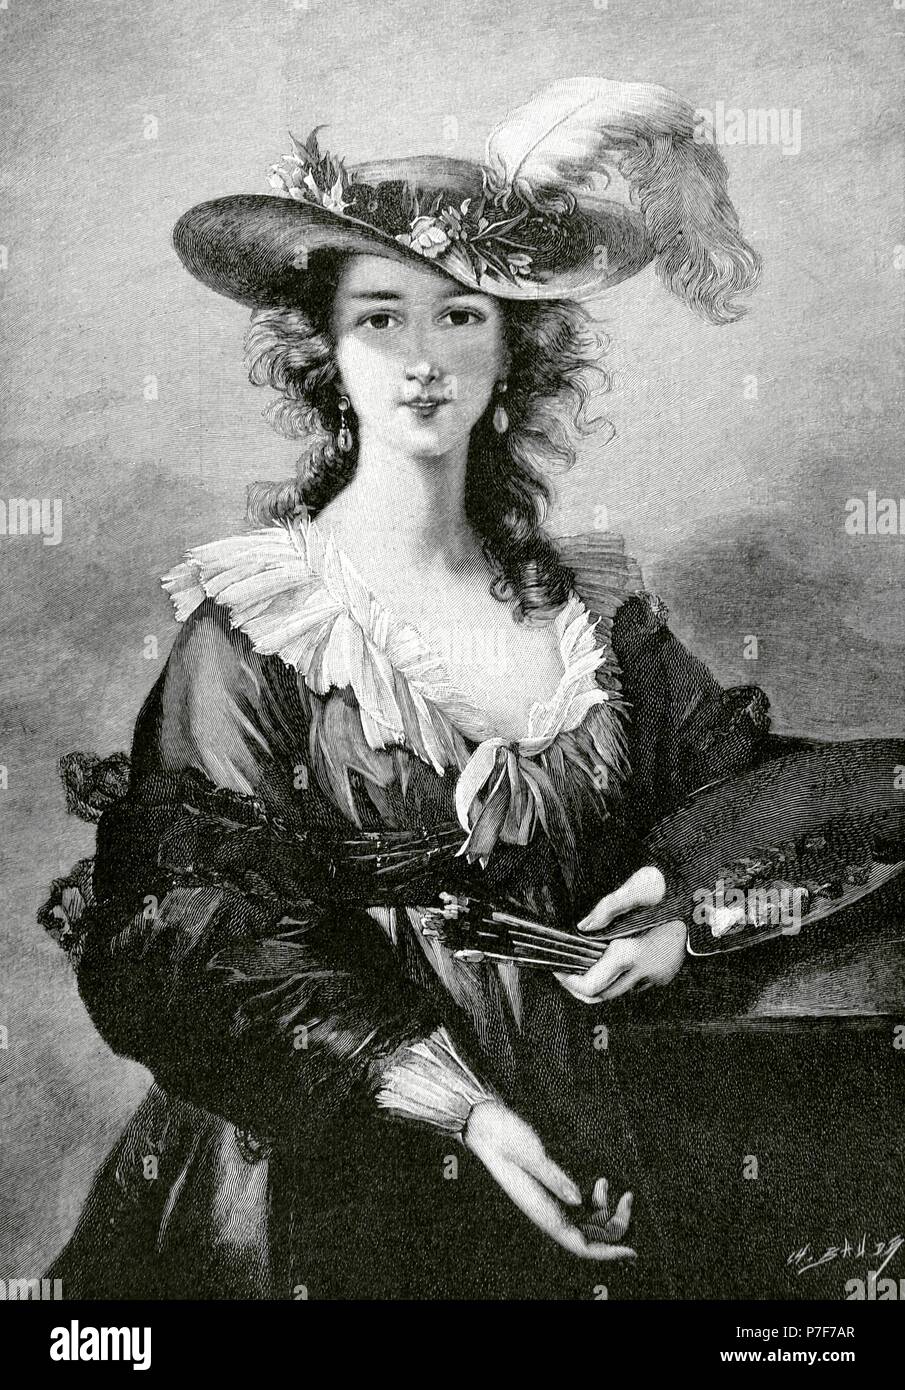 Elisabeth Louise Vigee Le Brun (1755-1842), bekannt als Madame Lebrun. Französischer Maler. Rokoko-Stil und neoklassizistischen. Self-Portrait. Kupferstich von ch. Baude. "La Ilustracion Artistica", 1896... Stockfoto